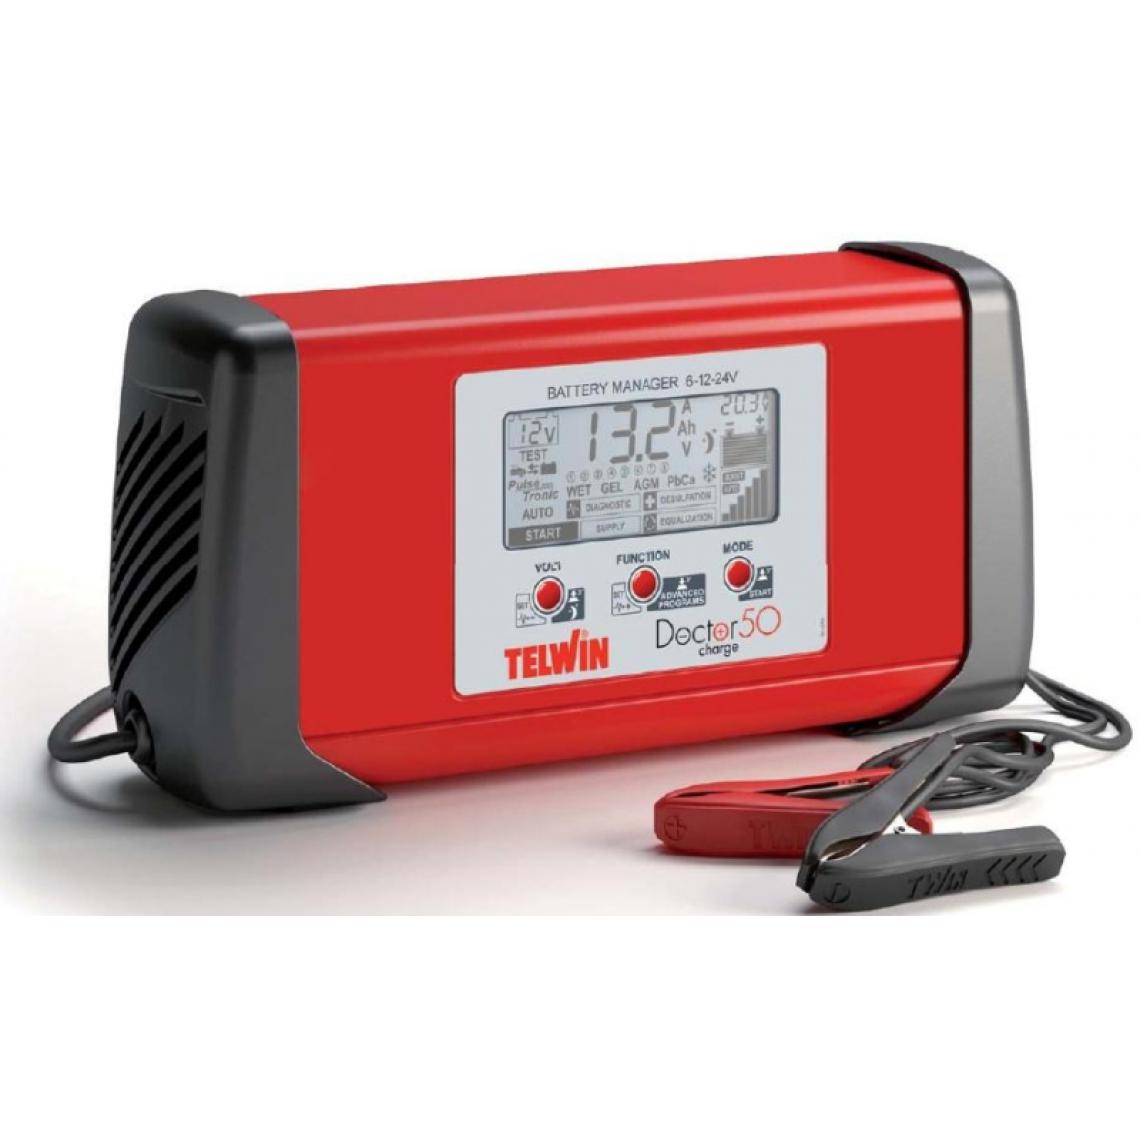 Telwin - Telwin - Chargeur démarreur mainteneur batterie multifonction 6-12-24V - Doctor Charge 50 - Consommables pour outillage motorisé